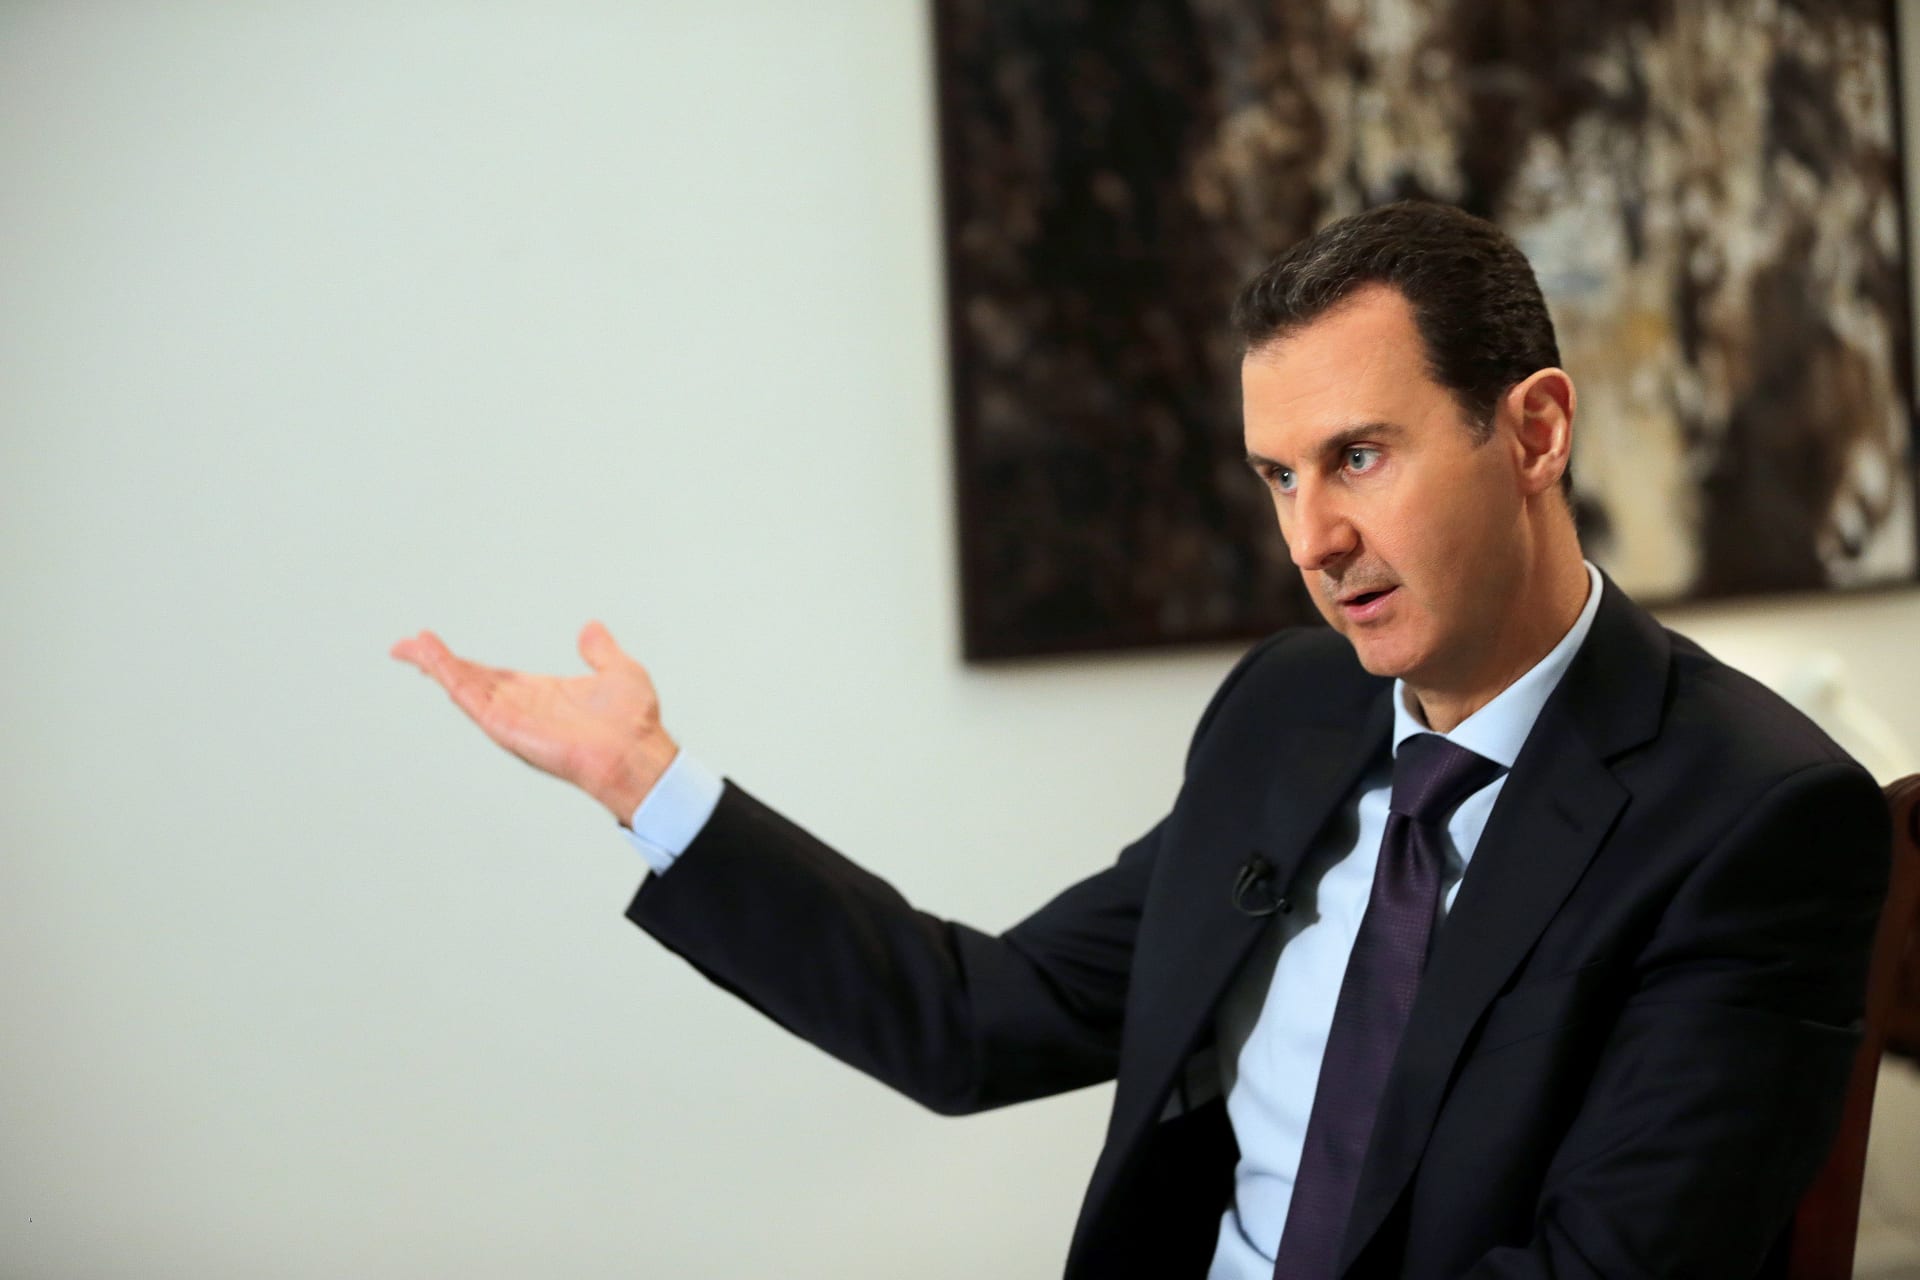 سوريا: مزاعم أمريكا تهدف لتبرير عدوان جديد ضدنا.. وتخلصنا من البرنامج الكيماوي "بلا رجعة"